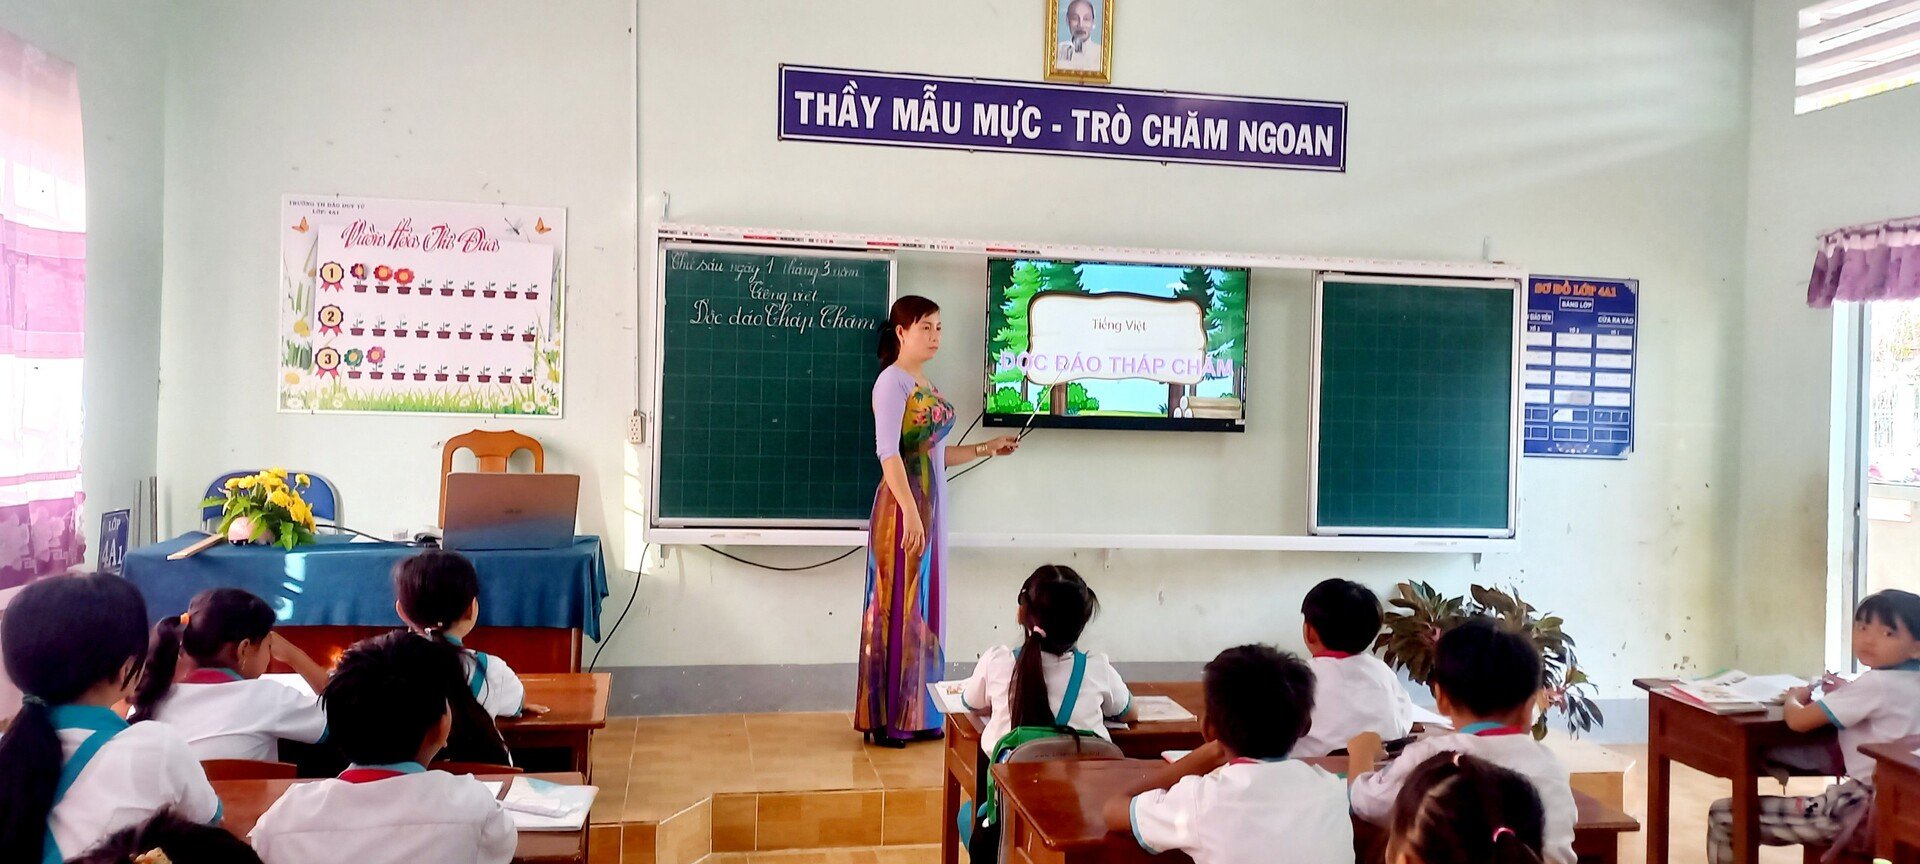 Từ khi ra trường năm 2007, cô Xuân đều gắn bó và giảng dạy ở các trường vùng sâu, vùng xa trên địa bàn tỉnh Cà Mau. Ở lớp nào, cô cũng được phụ huynh tin tưởng gửi gắm con em để họ yên tâm mưu sinh nơi đất khách.